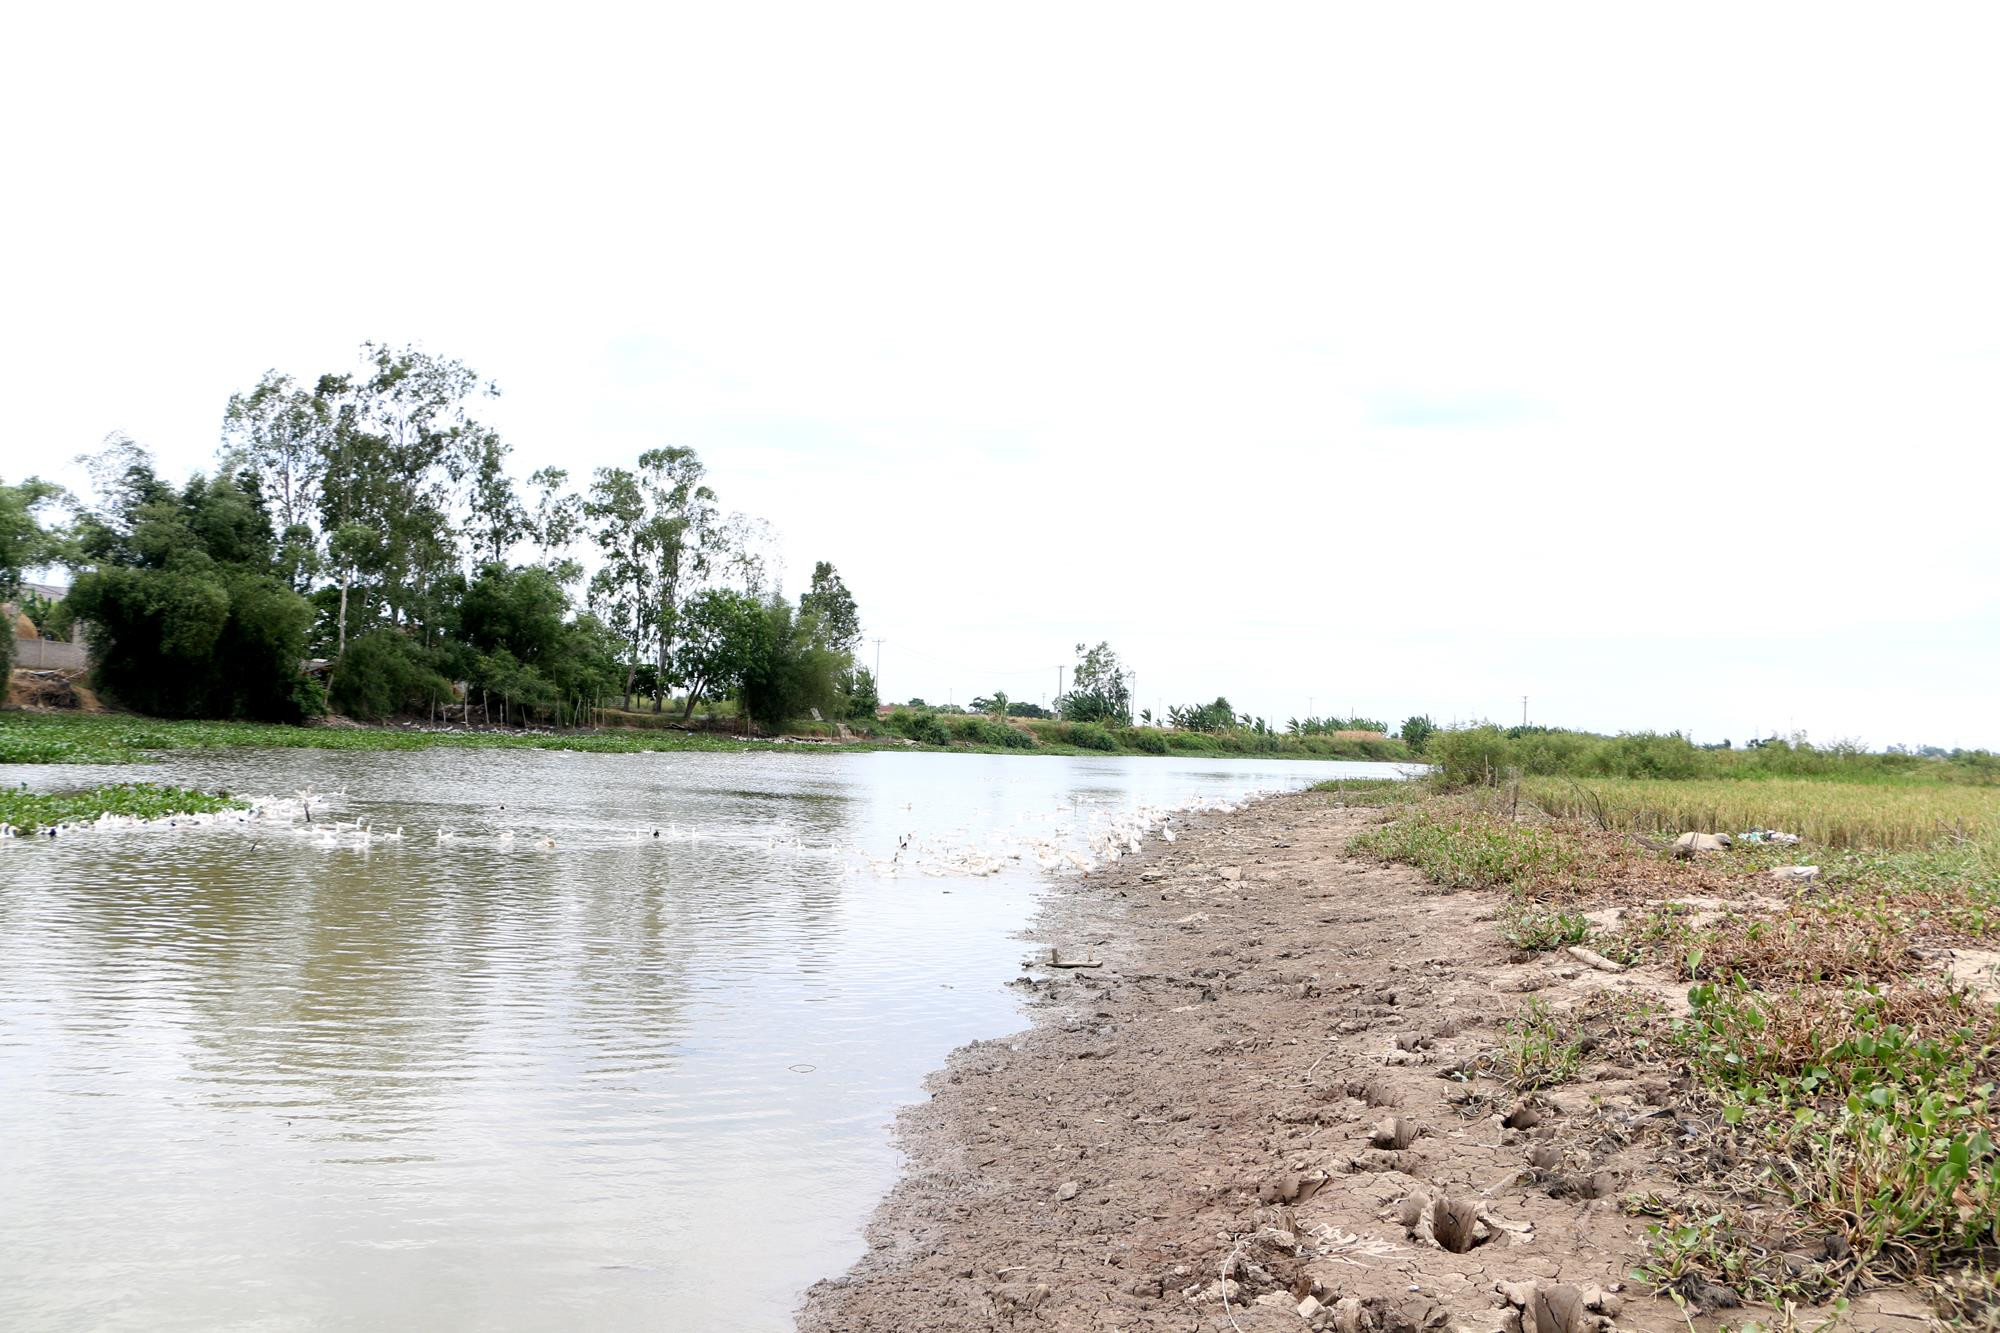 Đoạn sông Cấm chảy qua xã Nghi Thuận, do nước ngọt giảm sâu và nước mặn xâm thực lên nên dù chưa cạn kiệt nhưng không thể bơm tưới cho cây trồng. Ảnh: Nguyễn Hải